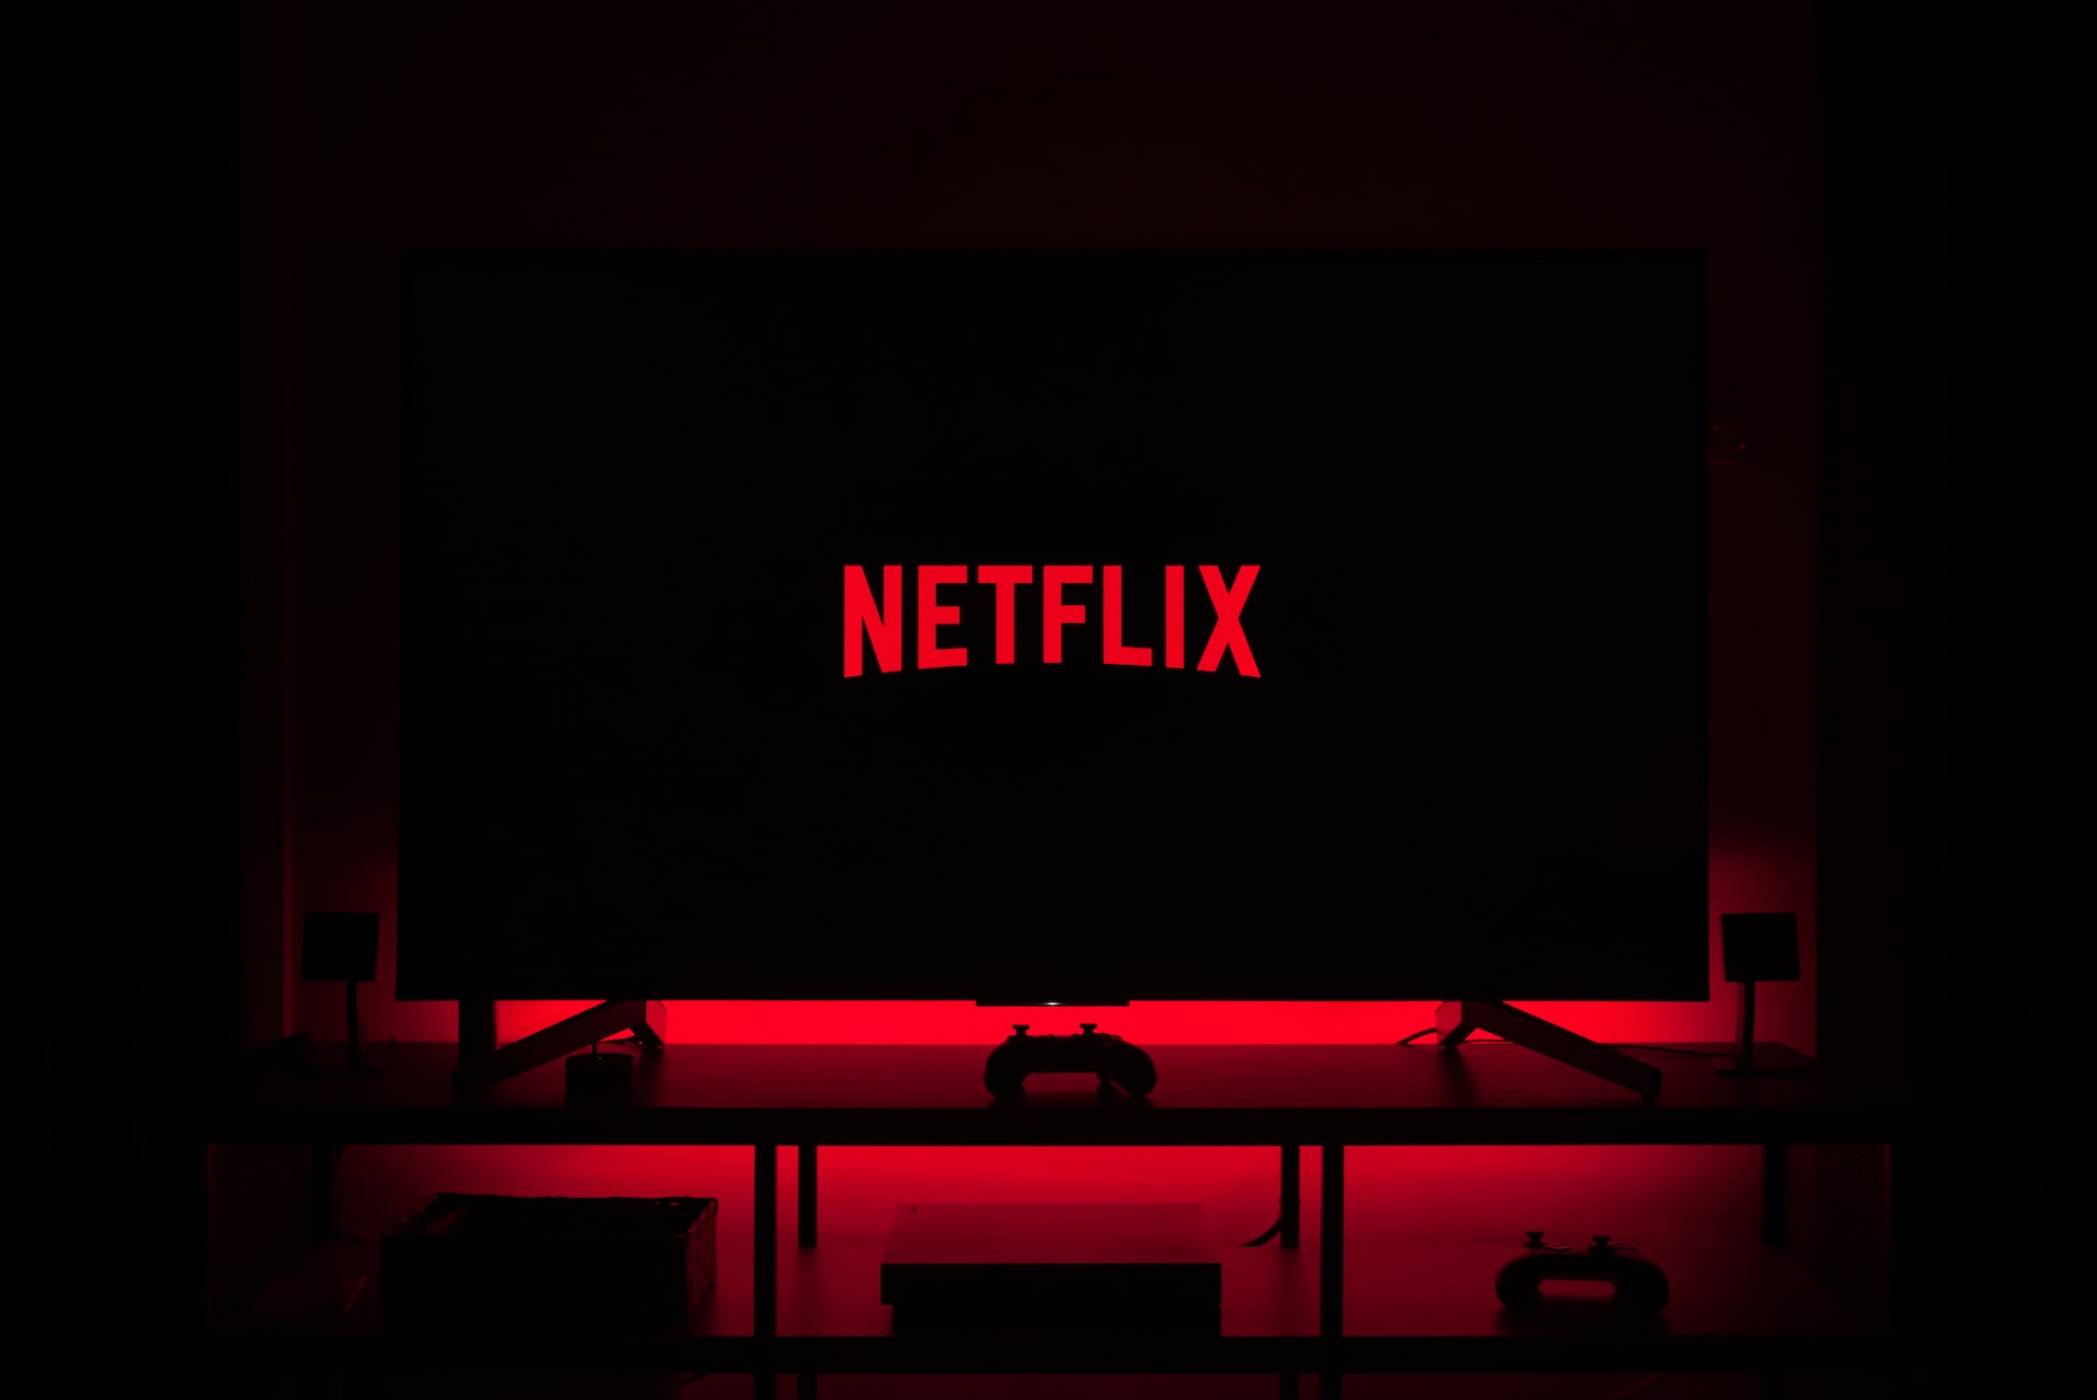 Netflix подхожда сериозно към субтитрите с нови опции за показване